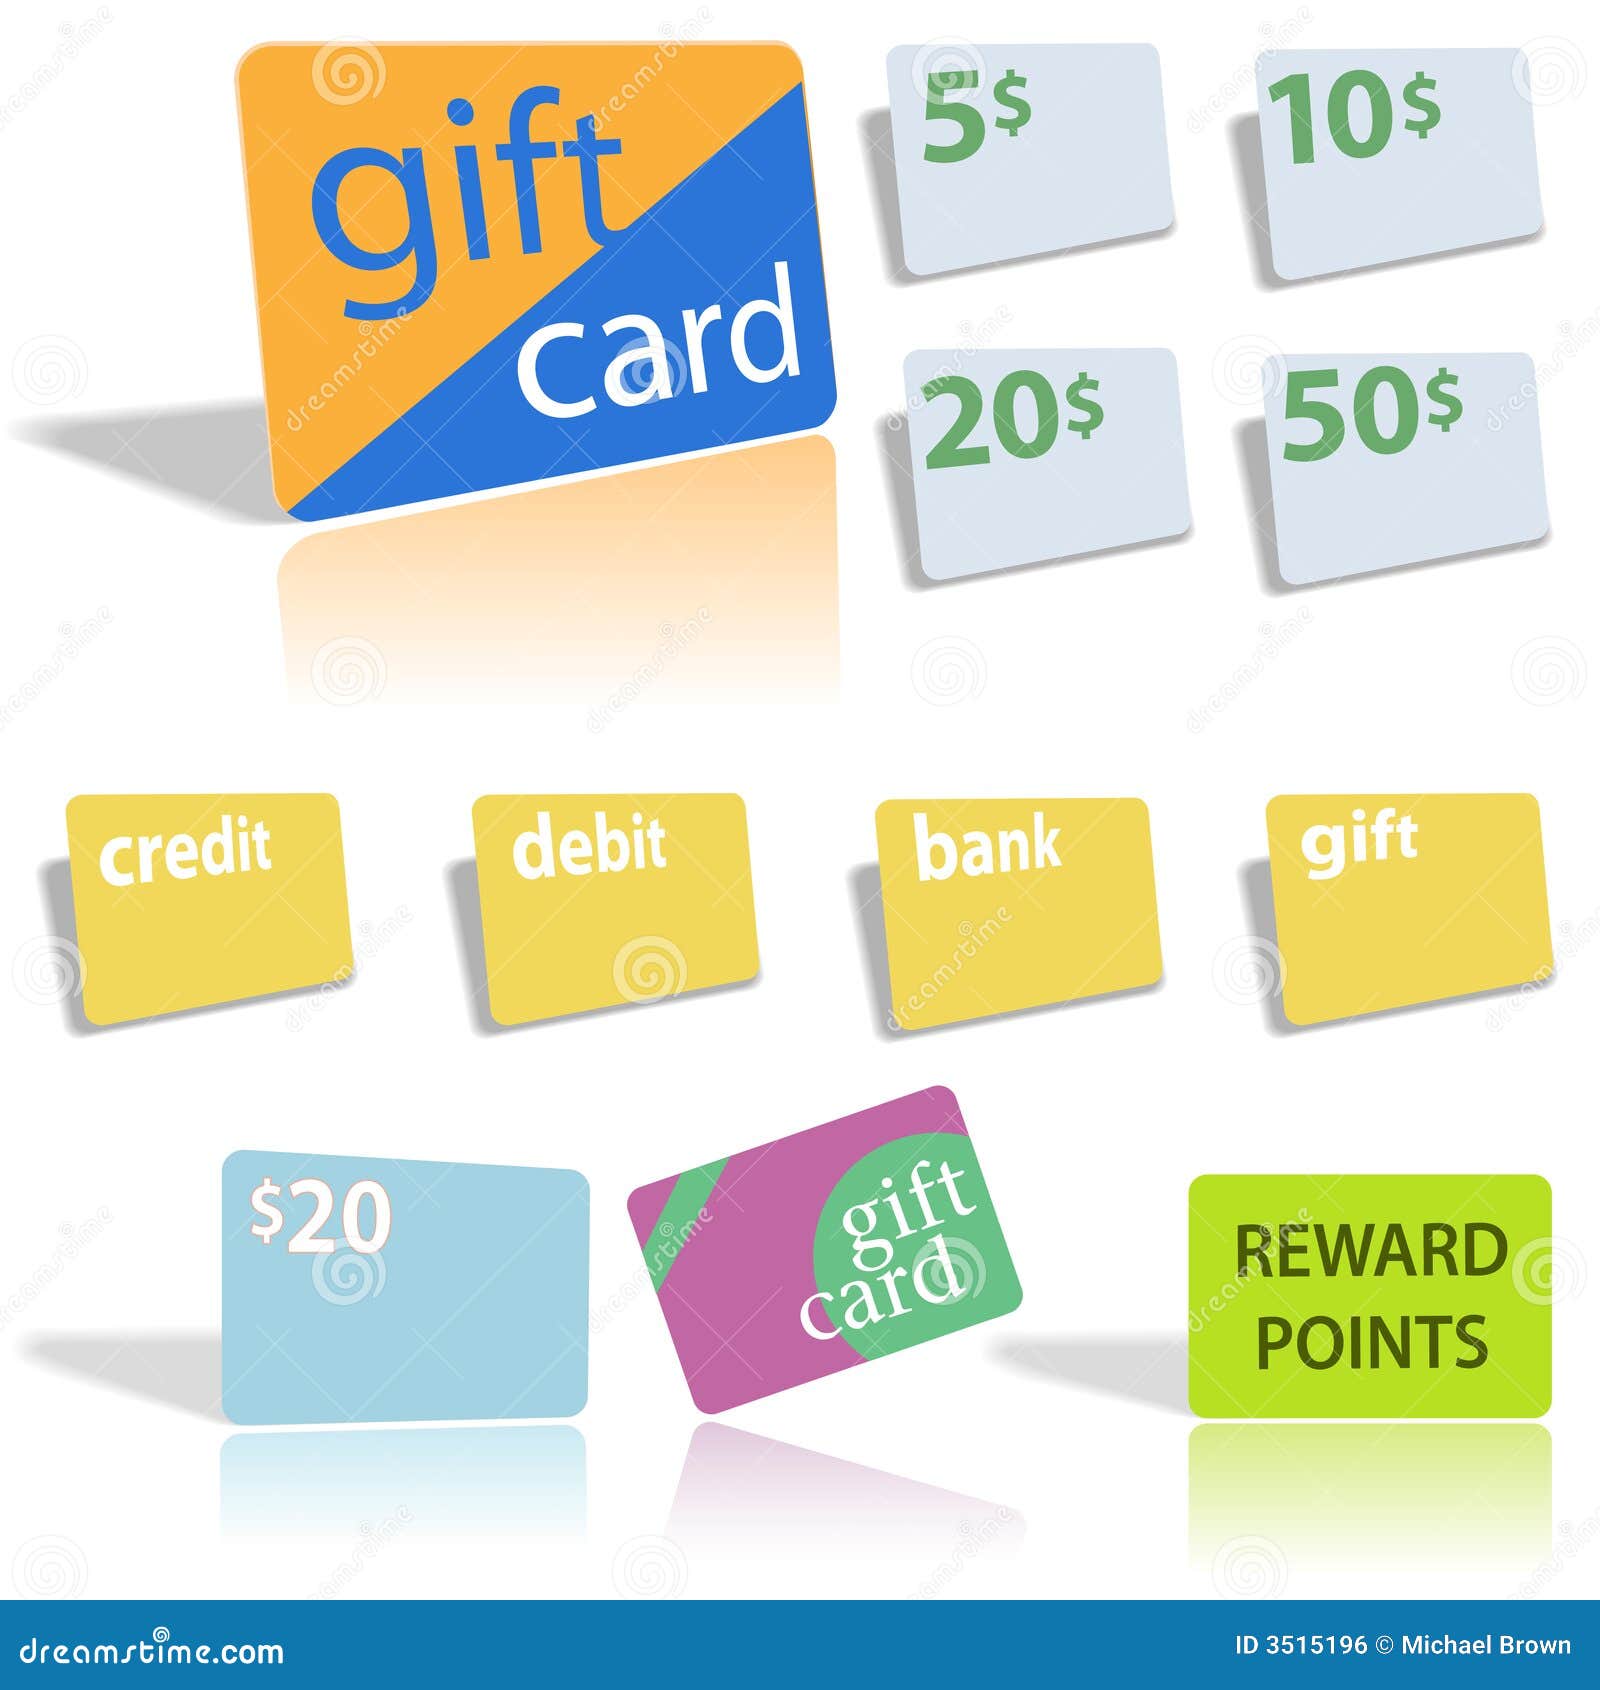 gift credit debit bank cards